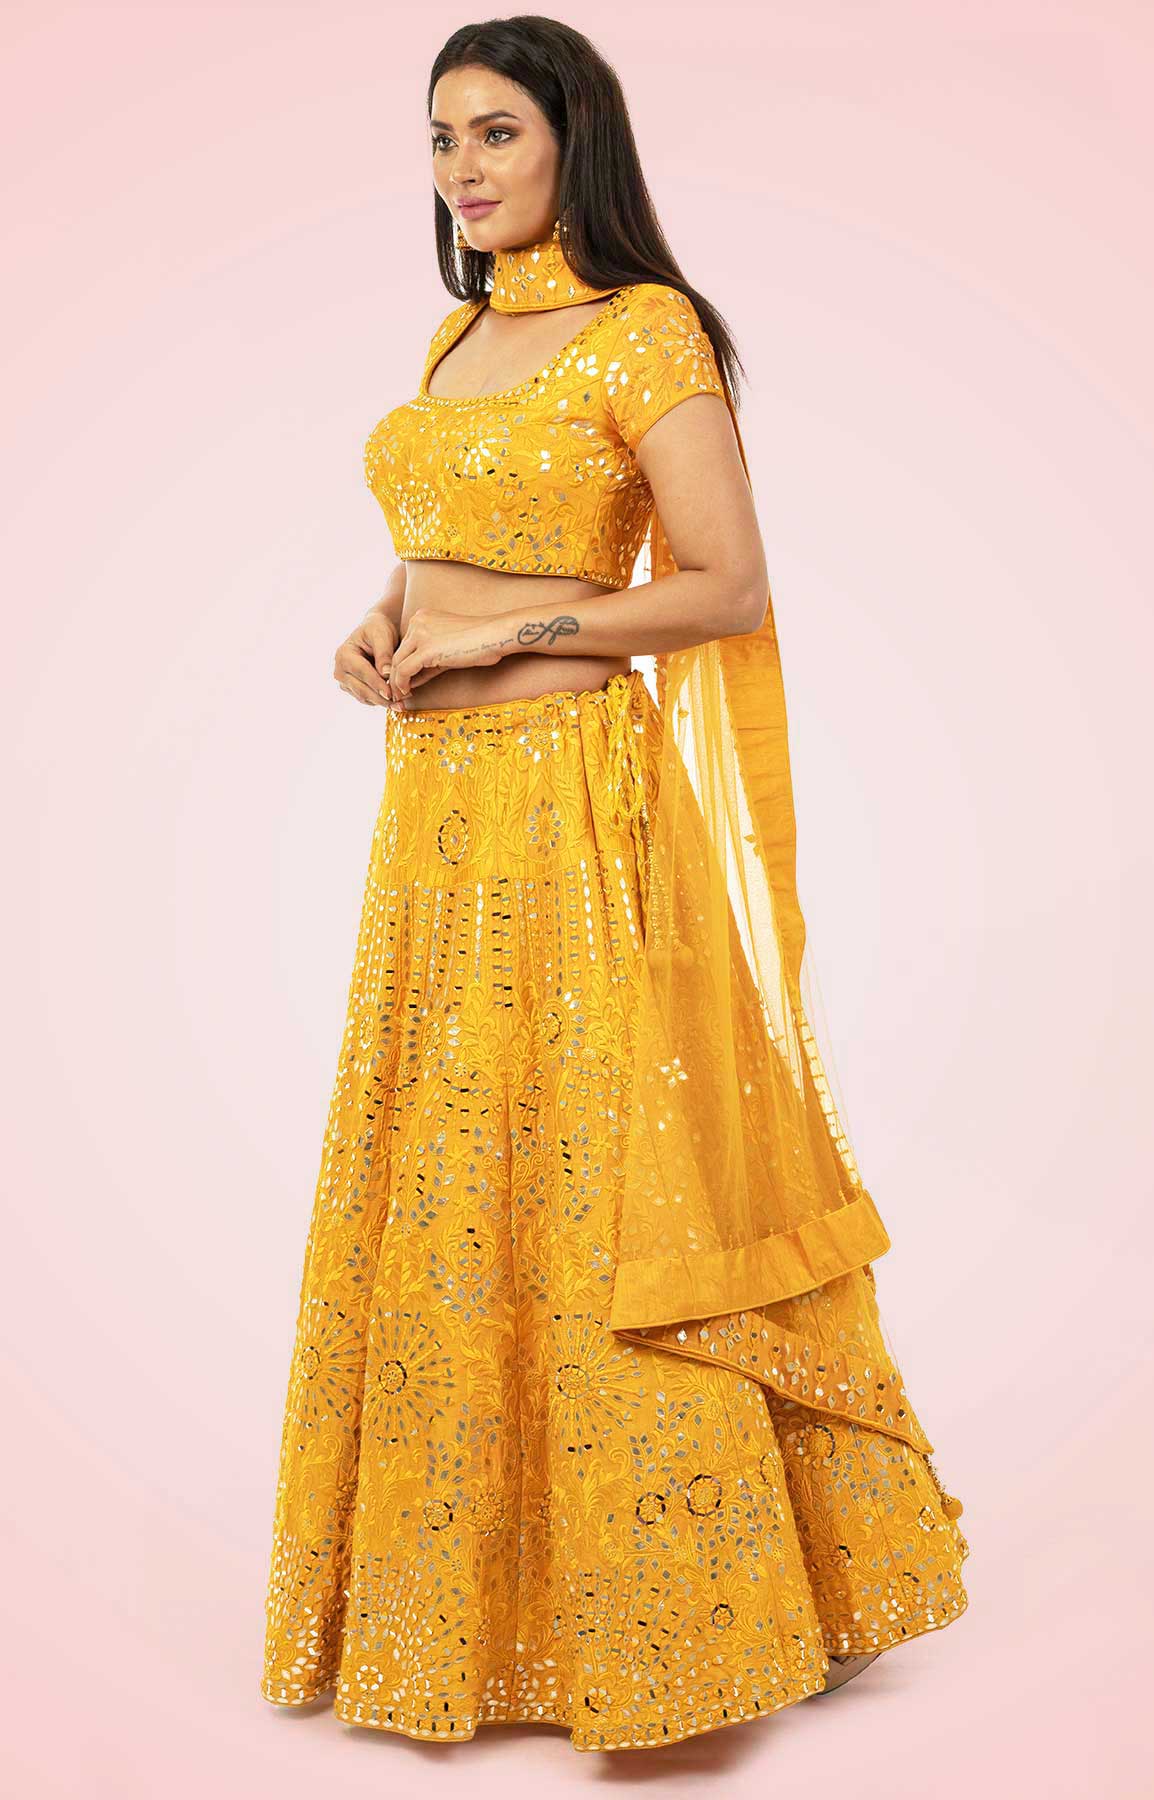 Golden Yellow Lehenga Choli With Leather And Mirror Work – Viraaya By Ushnakmals